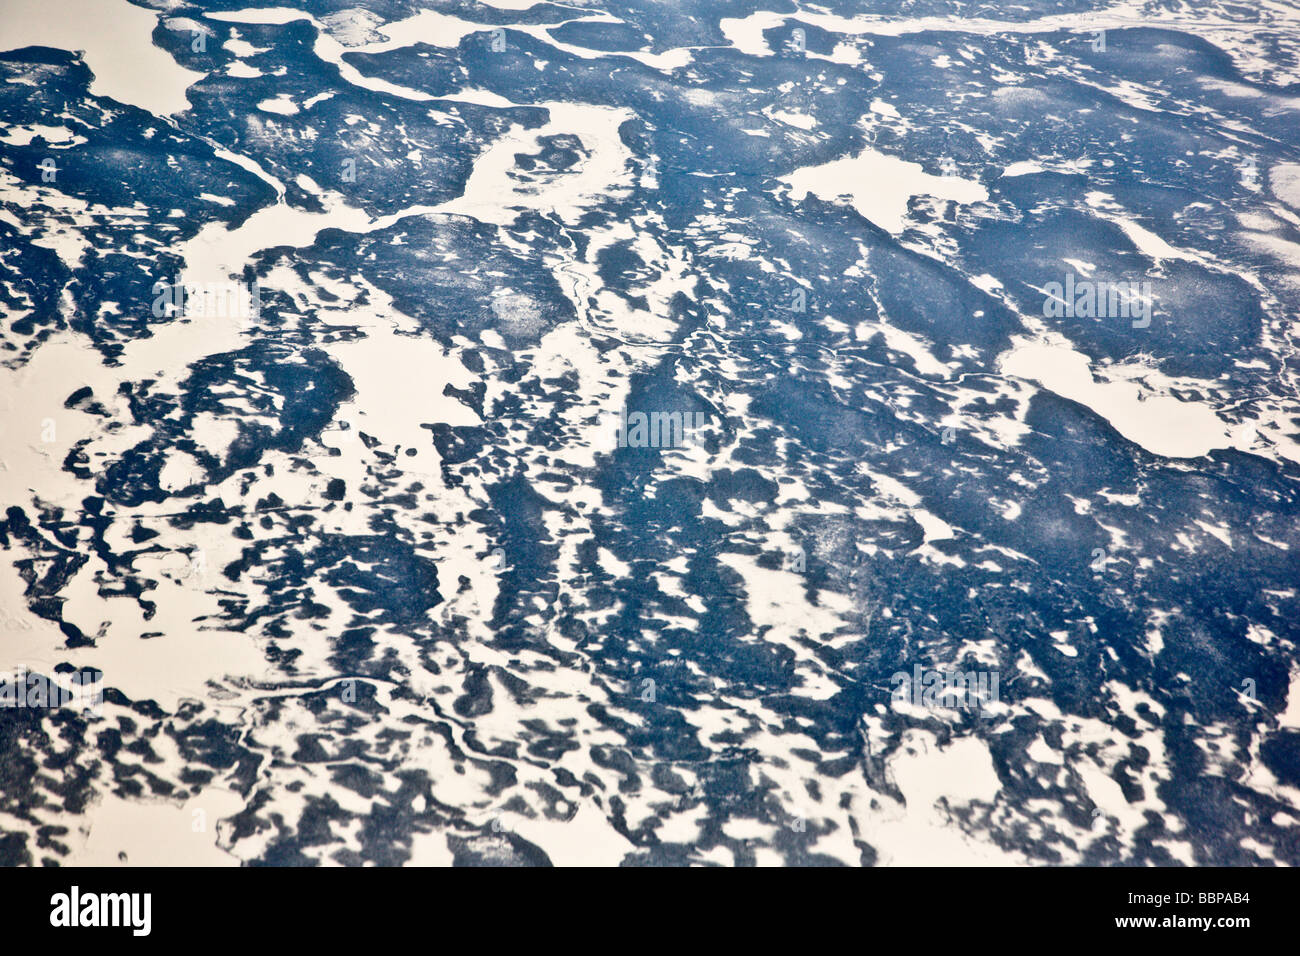 L'awe-inspiring calotte polaire peut être vu dans cette vue à partir d'un avion, en provenance de Francfort, Allemagne, à Washington, DC. Banque D'Images